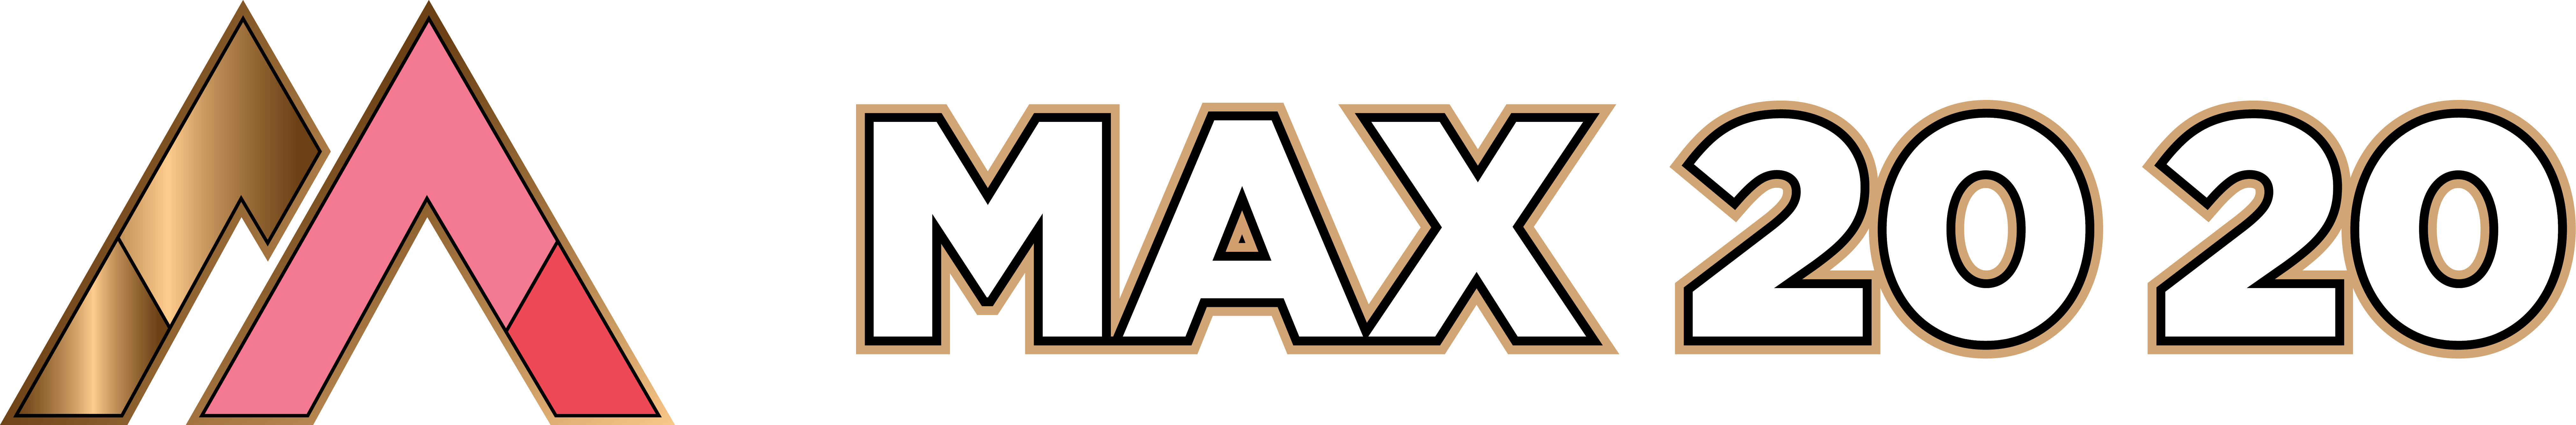 Logo Max 20 20 | Verkoopautomaten, koffiemachines & waterdispensers voor uw bedrijf